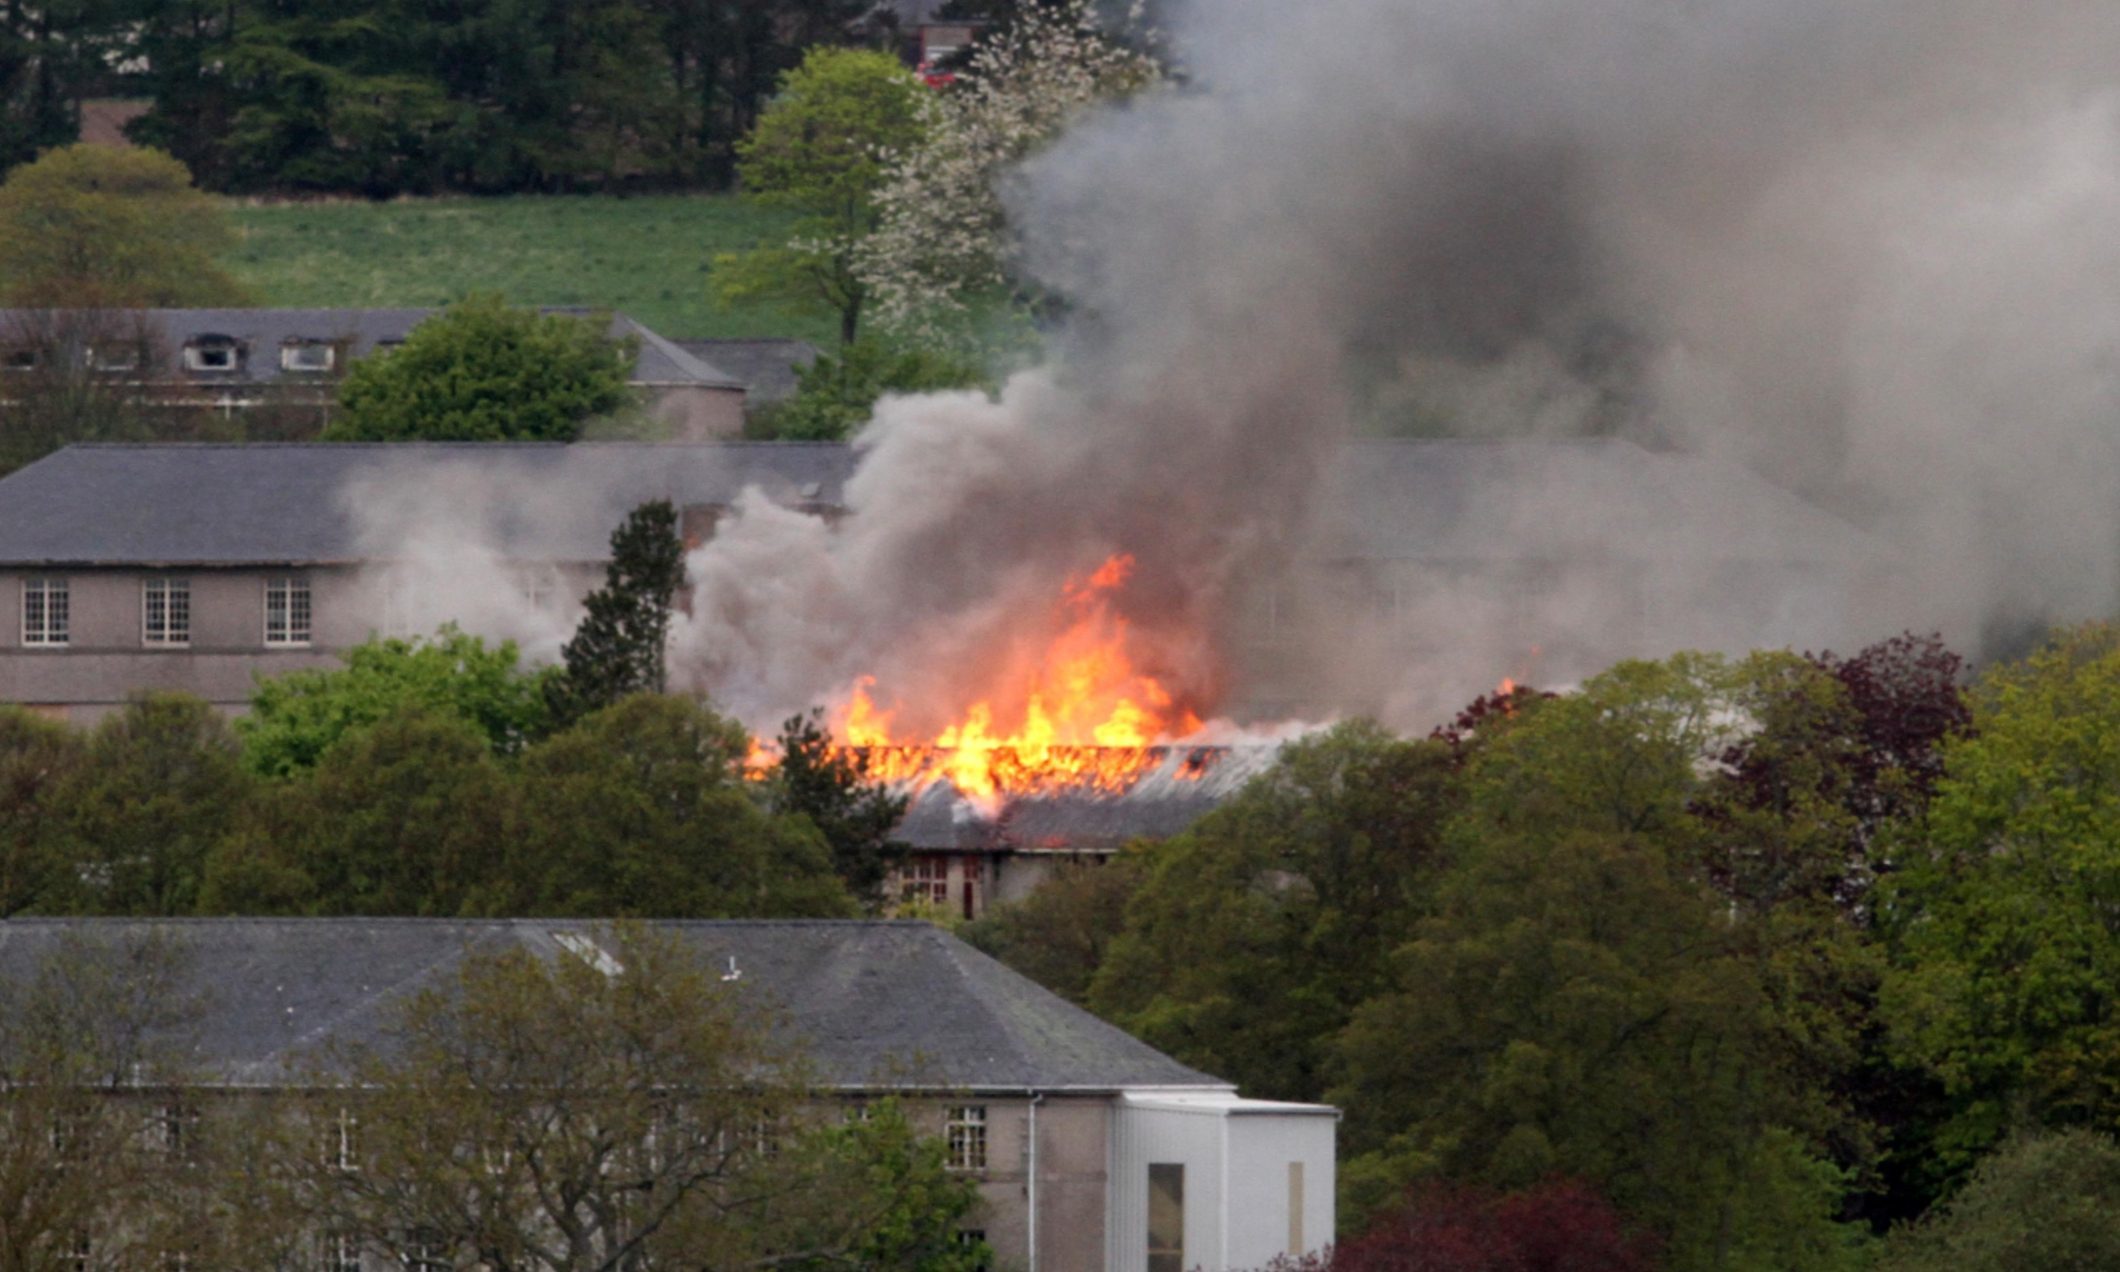 Strathmartine has suffered numerous blazes.